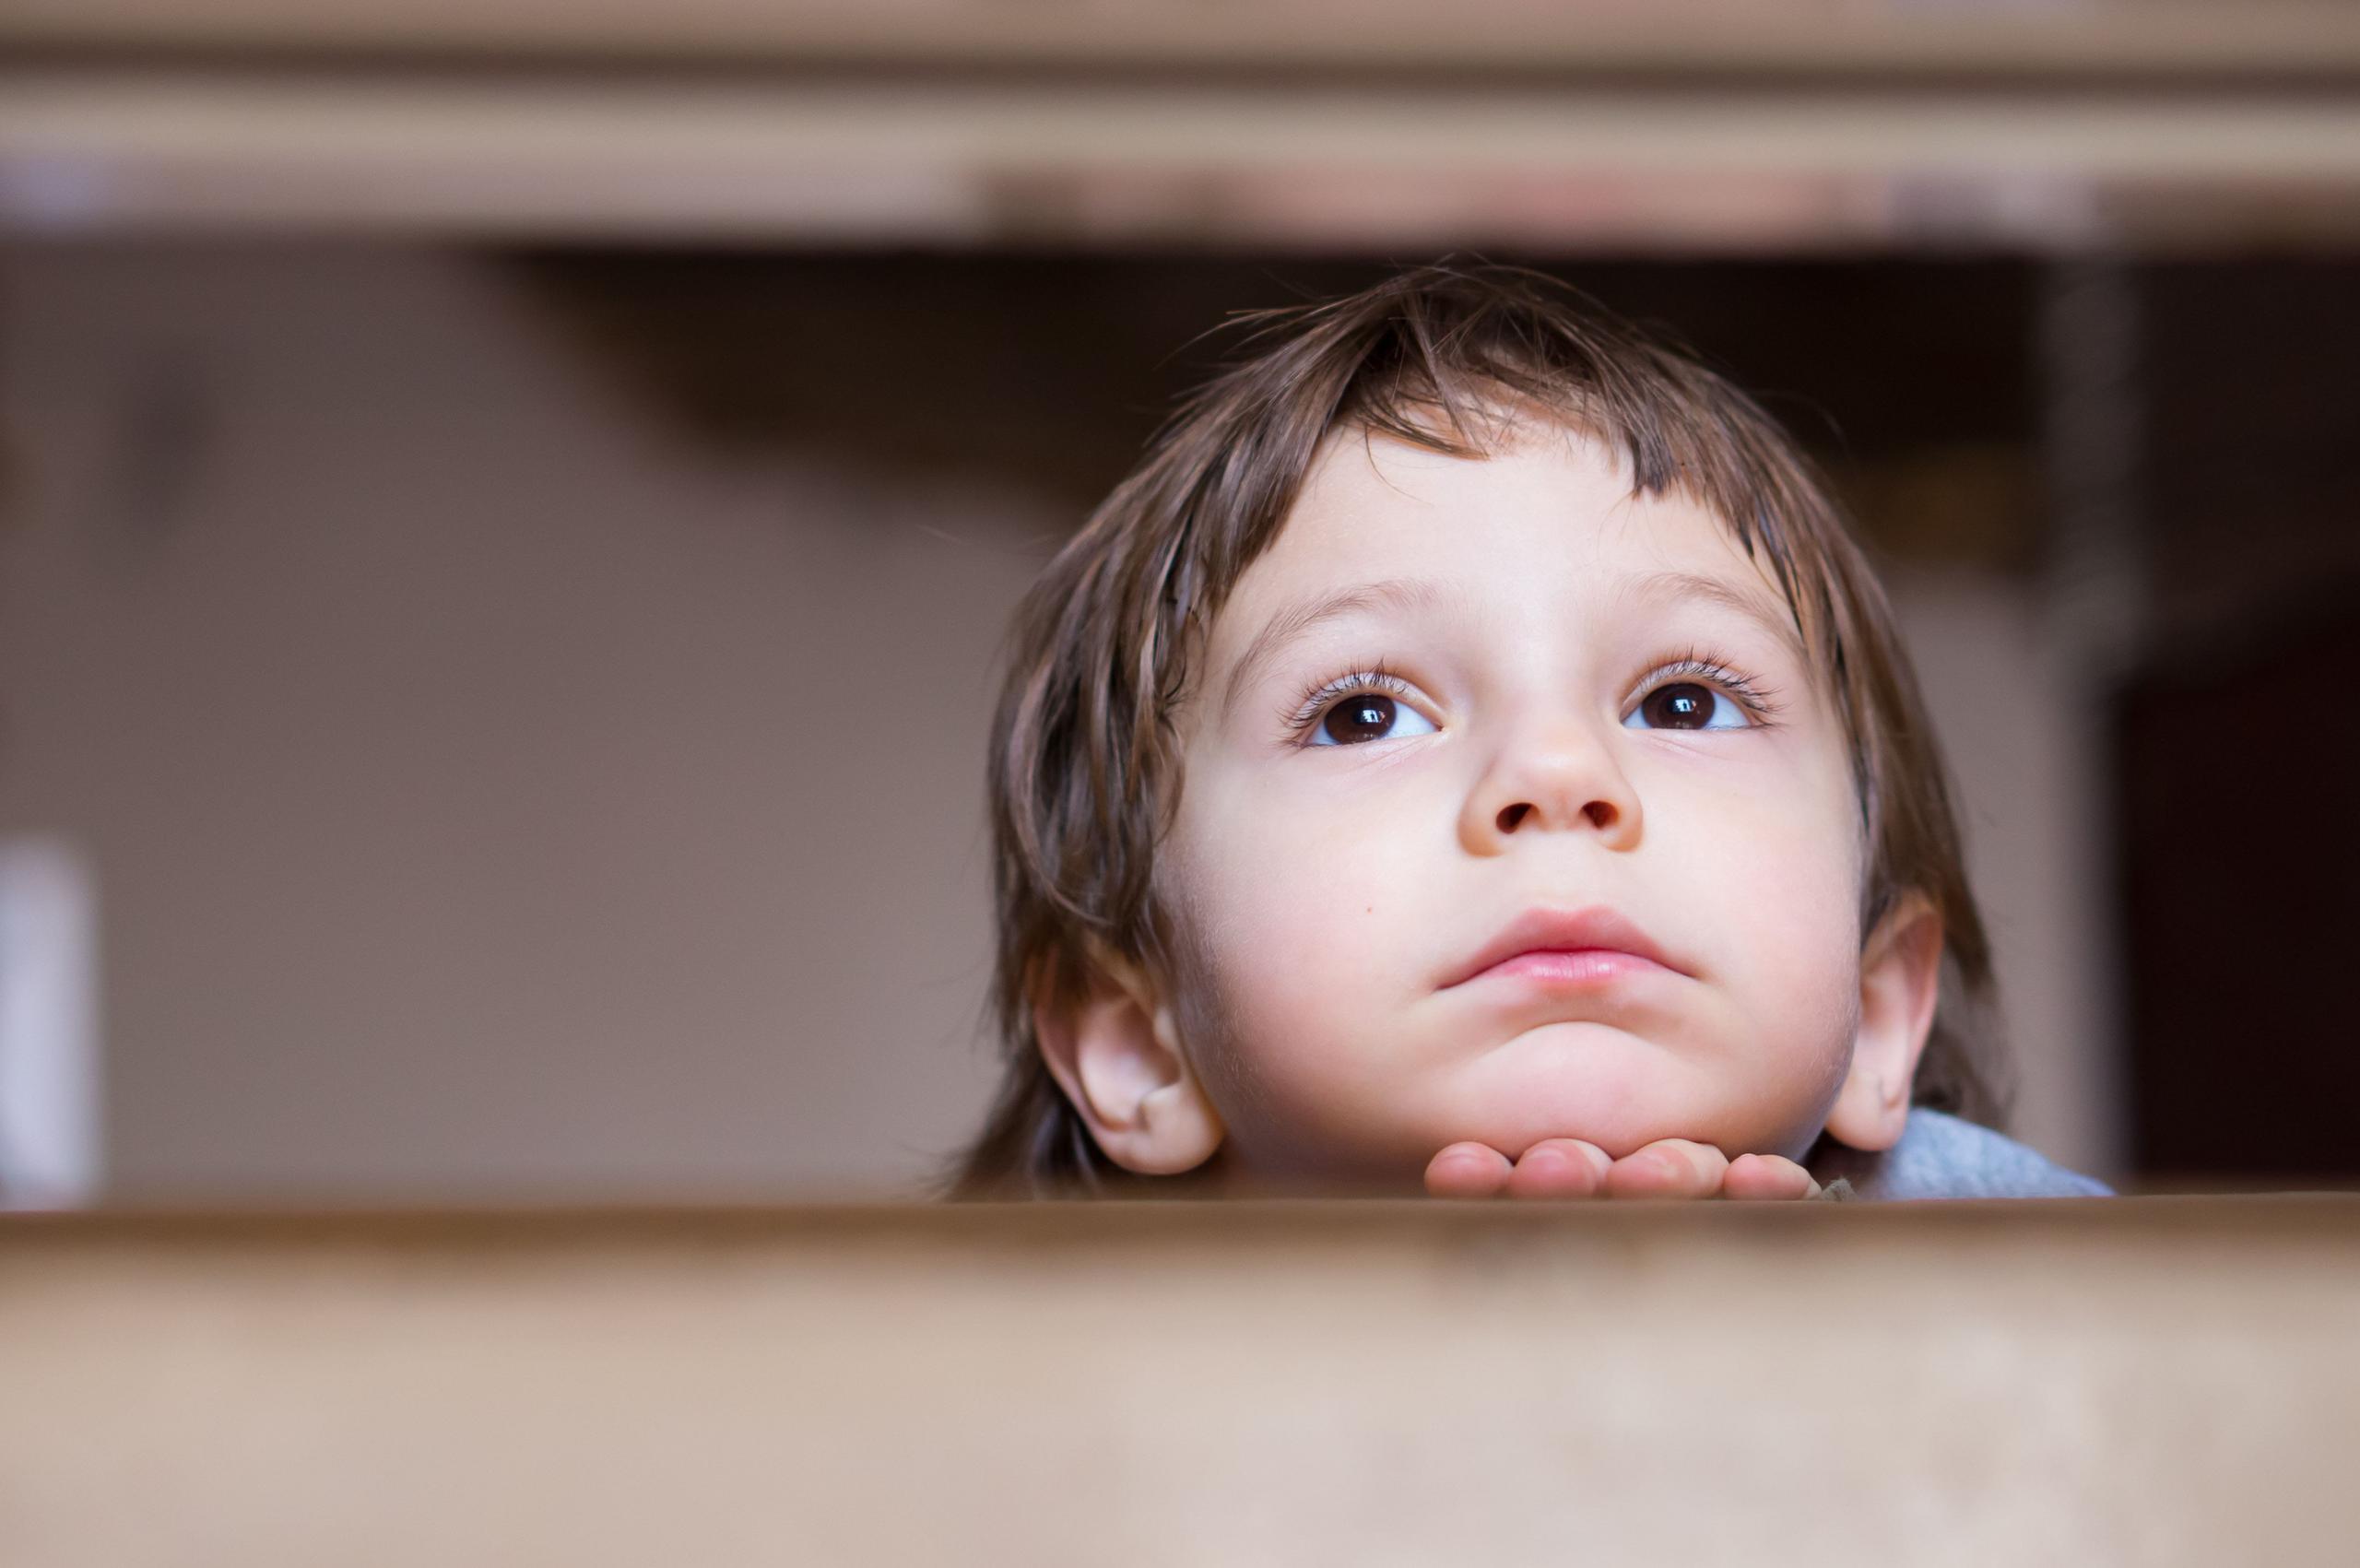 Cuando se investigan aspectos relacionados con el pobre desempeño académico del niño y su comportamiento se deben analizar aspectos variados. (Shutterstock.com)